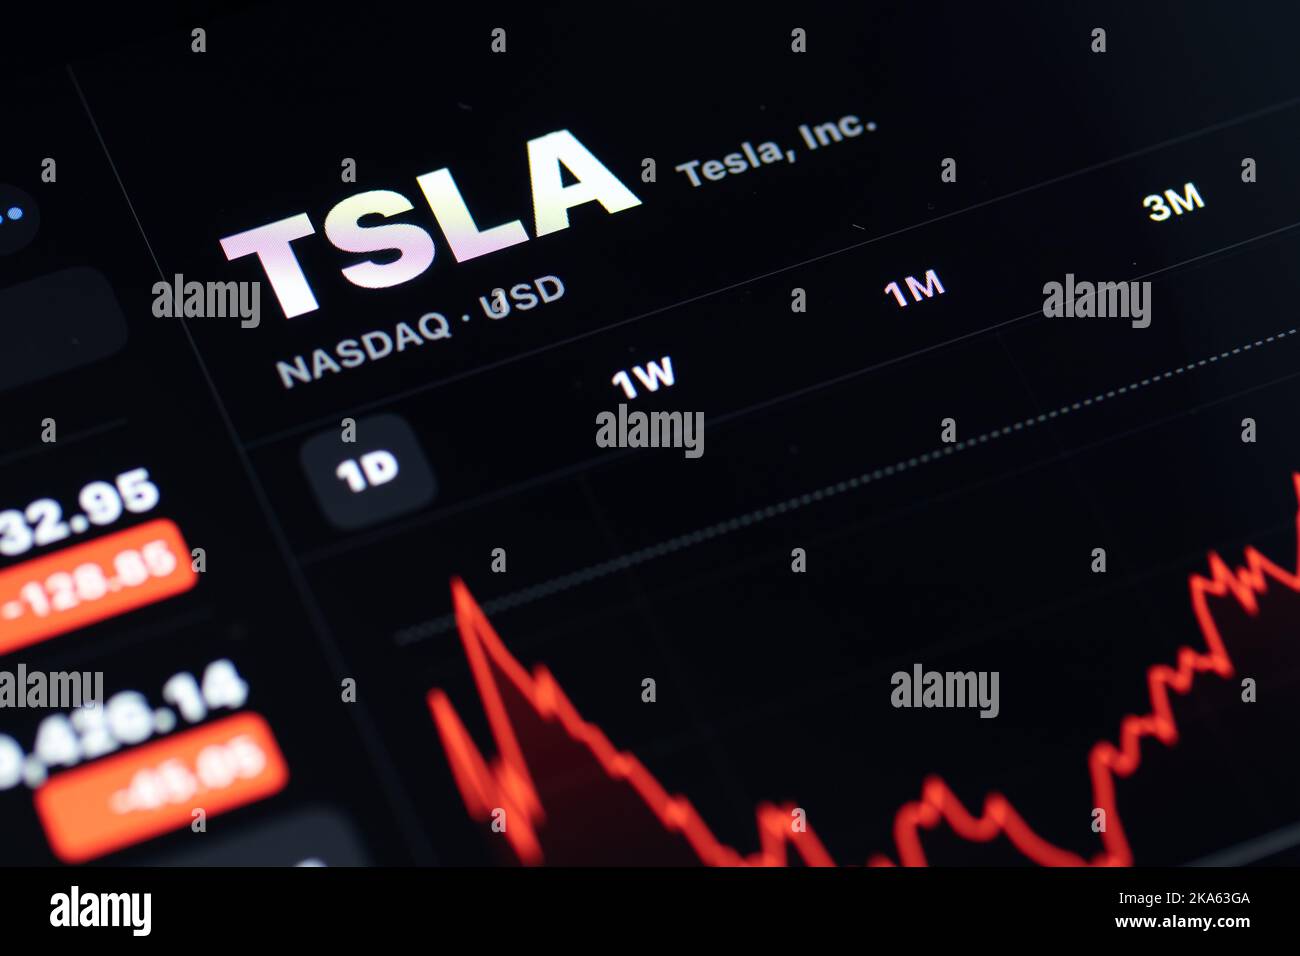 Die Tesla, Inc., TSLA, an der New Yorker Börse (NYSE) wird auf einem Bildschirm angezeigt und zeigt den Aktienkurs des Elektrofahrzeugherstellers an. Stockfoto